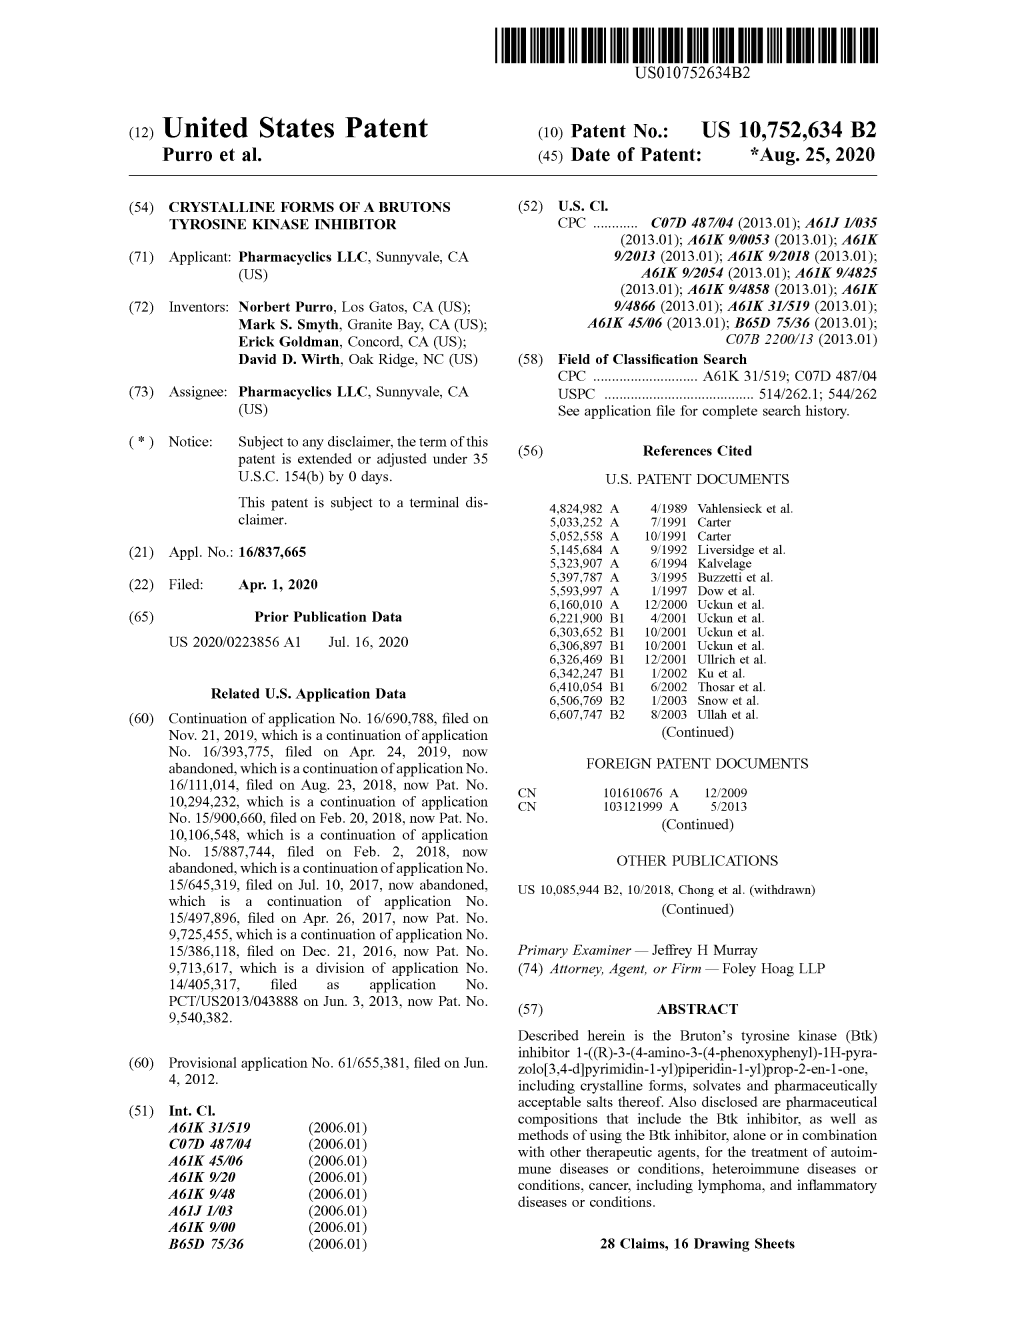 ( 12 ) United States Patent ( 10 ) Patent No .: US 10,752,634 B2 Purro Et Al